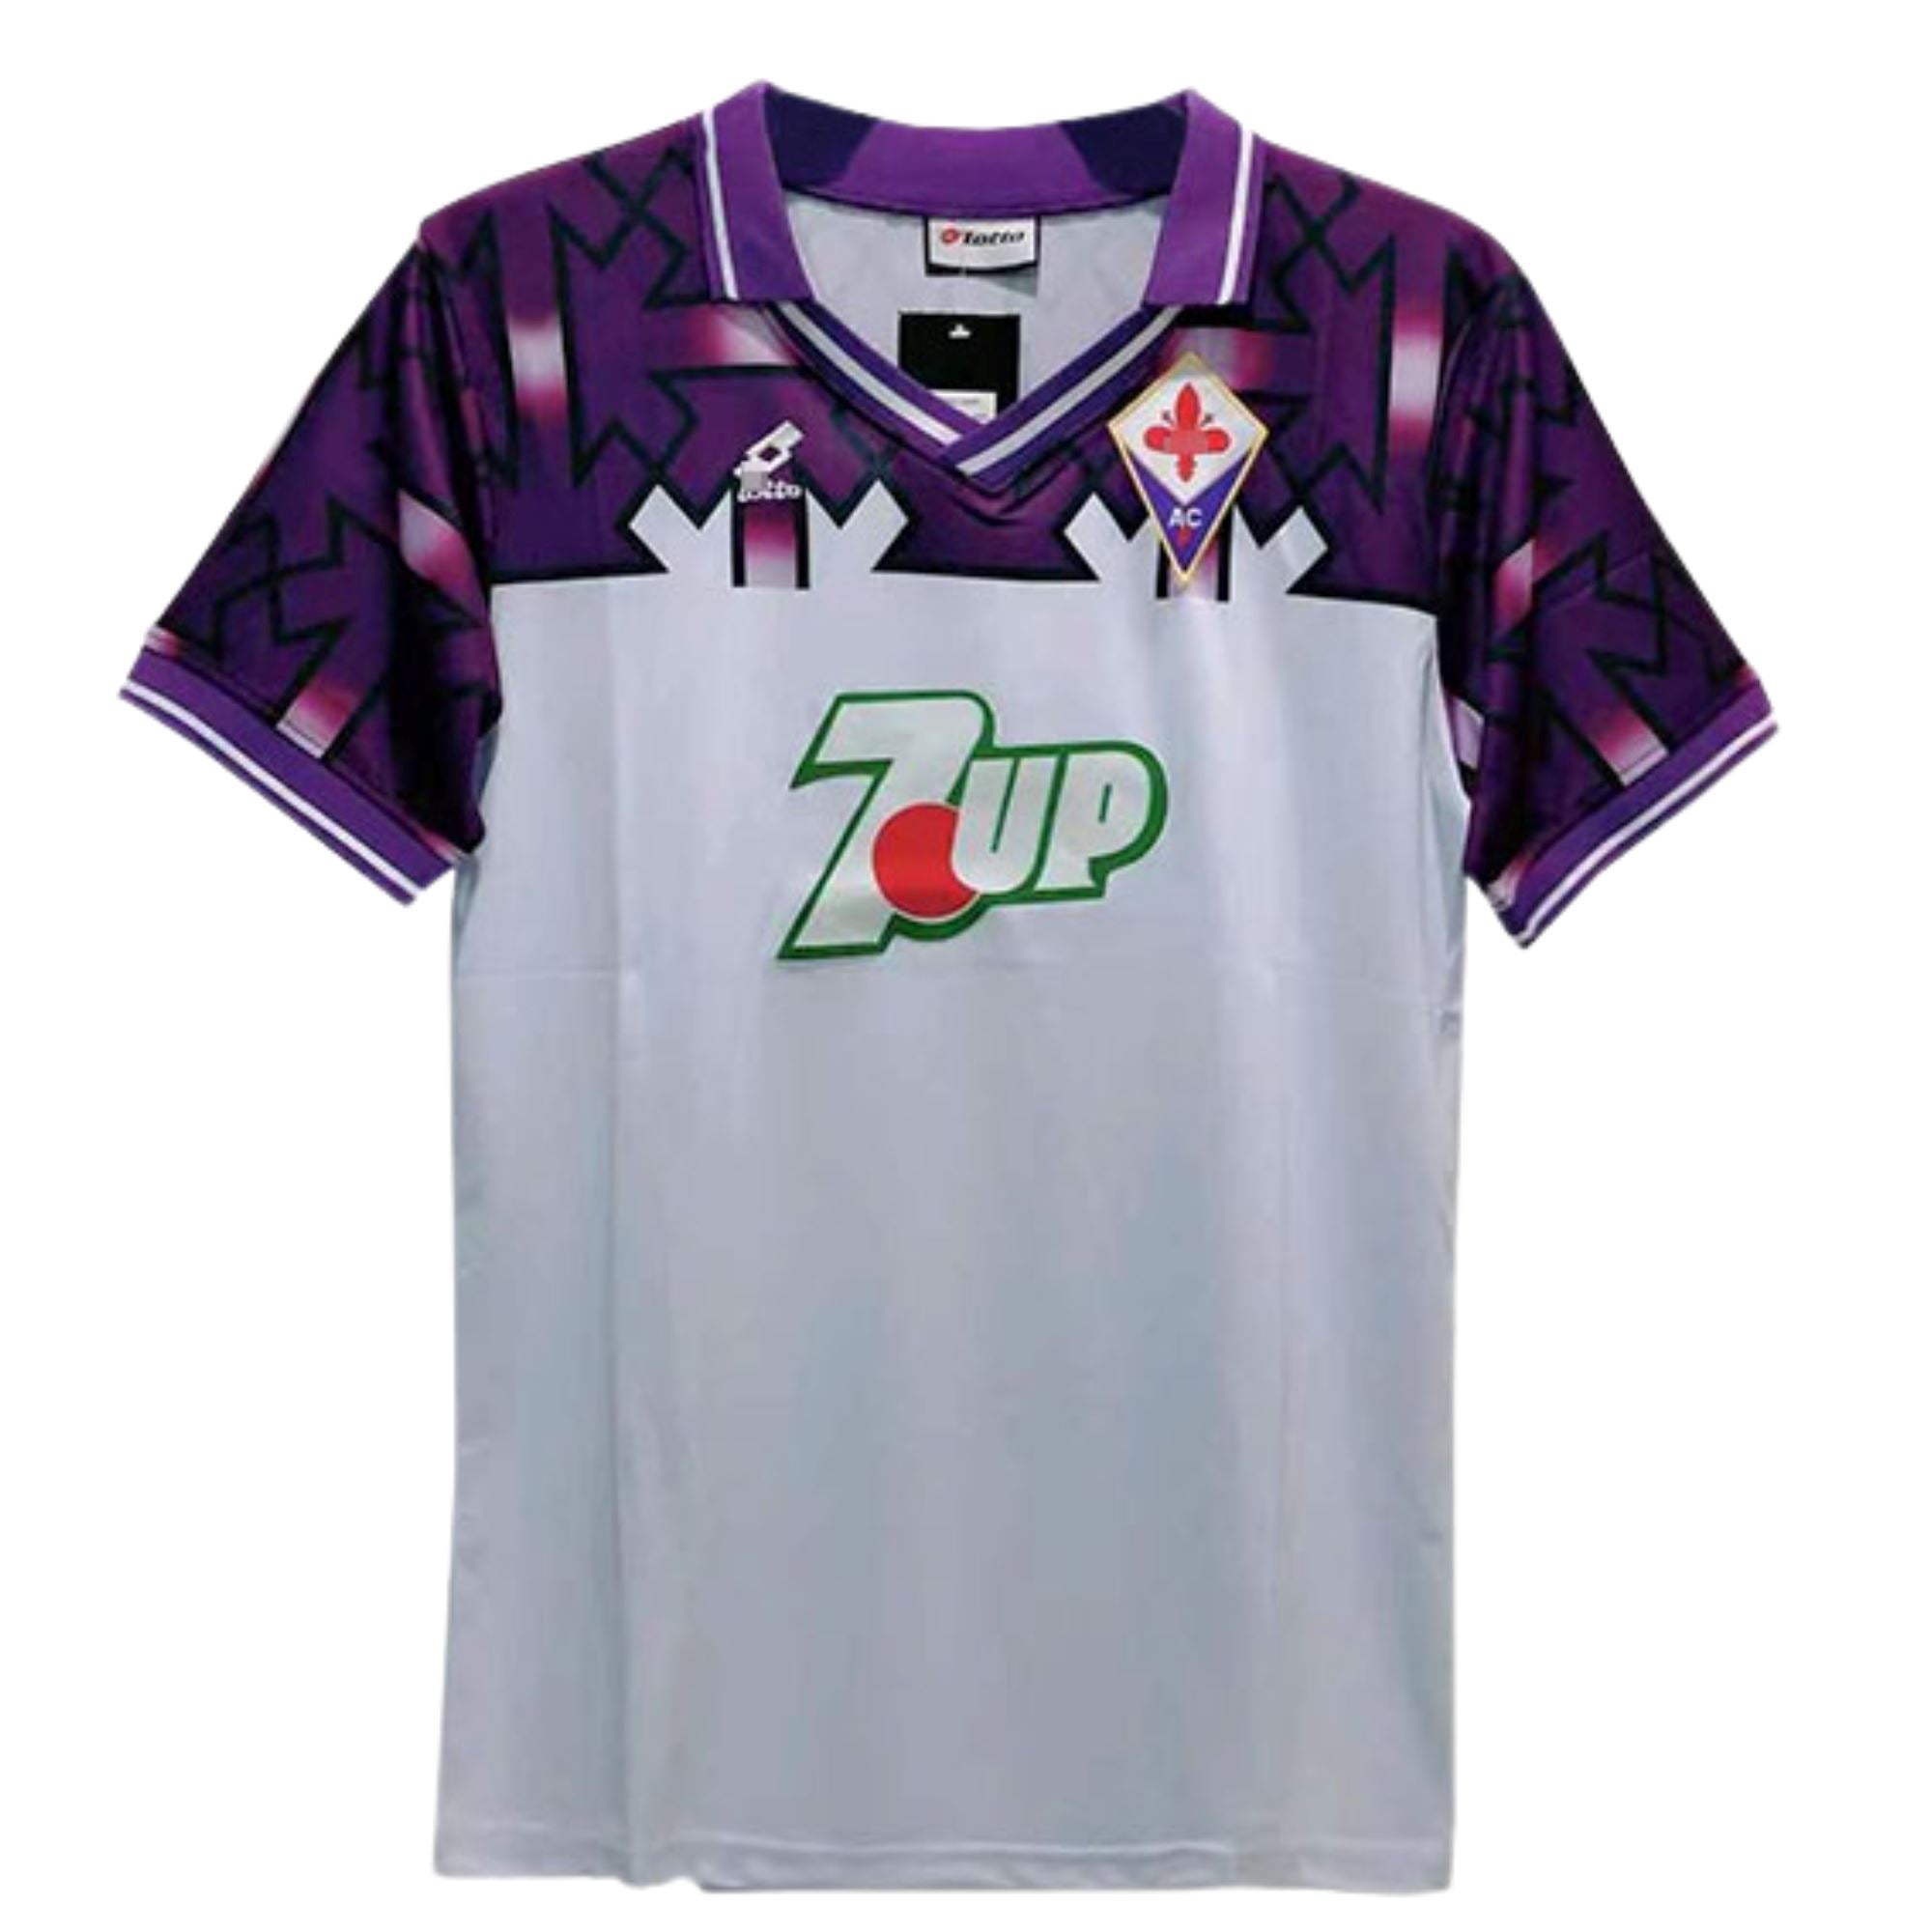 1992/93 Fiorentina Away Jersey - ITASPORT